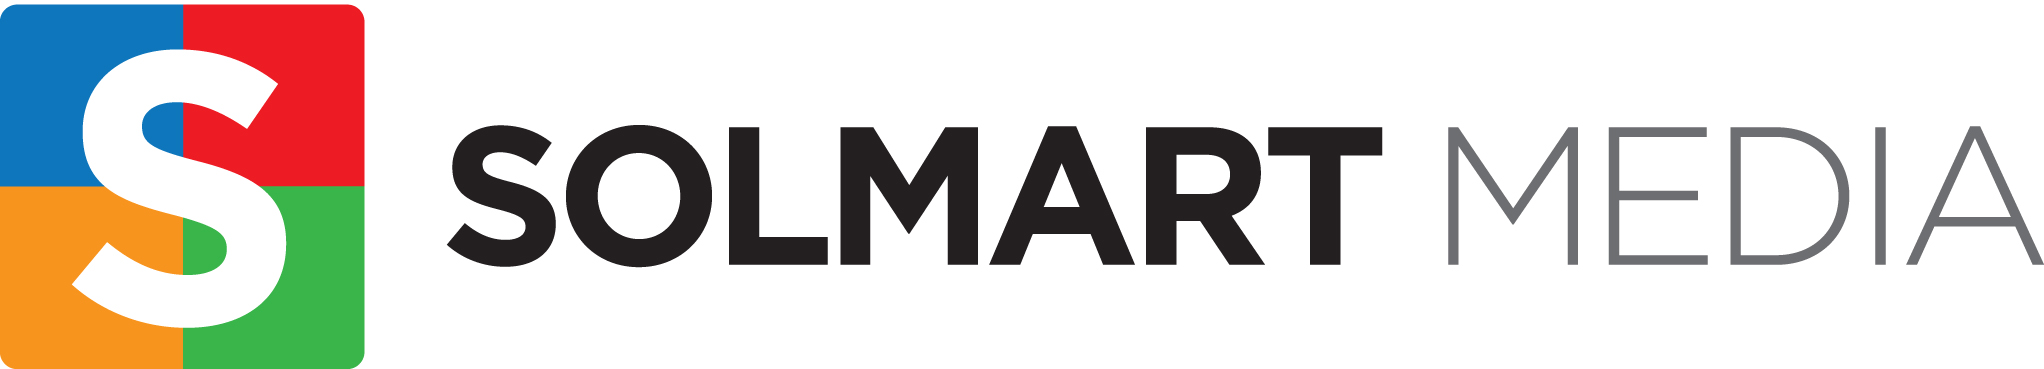 Solmart Media LLC Logo